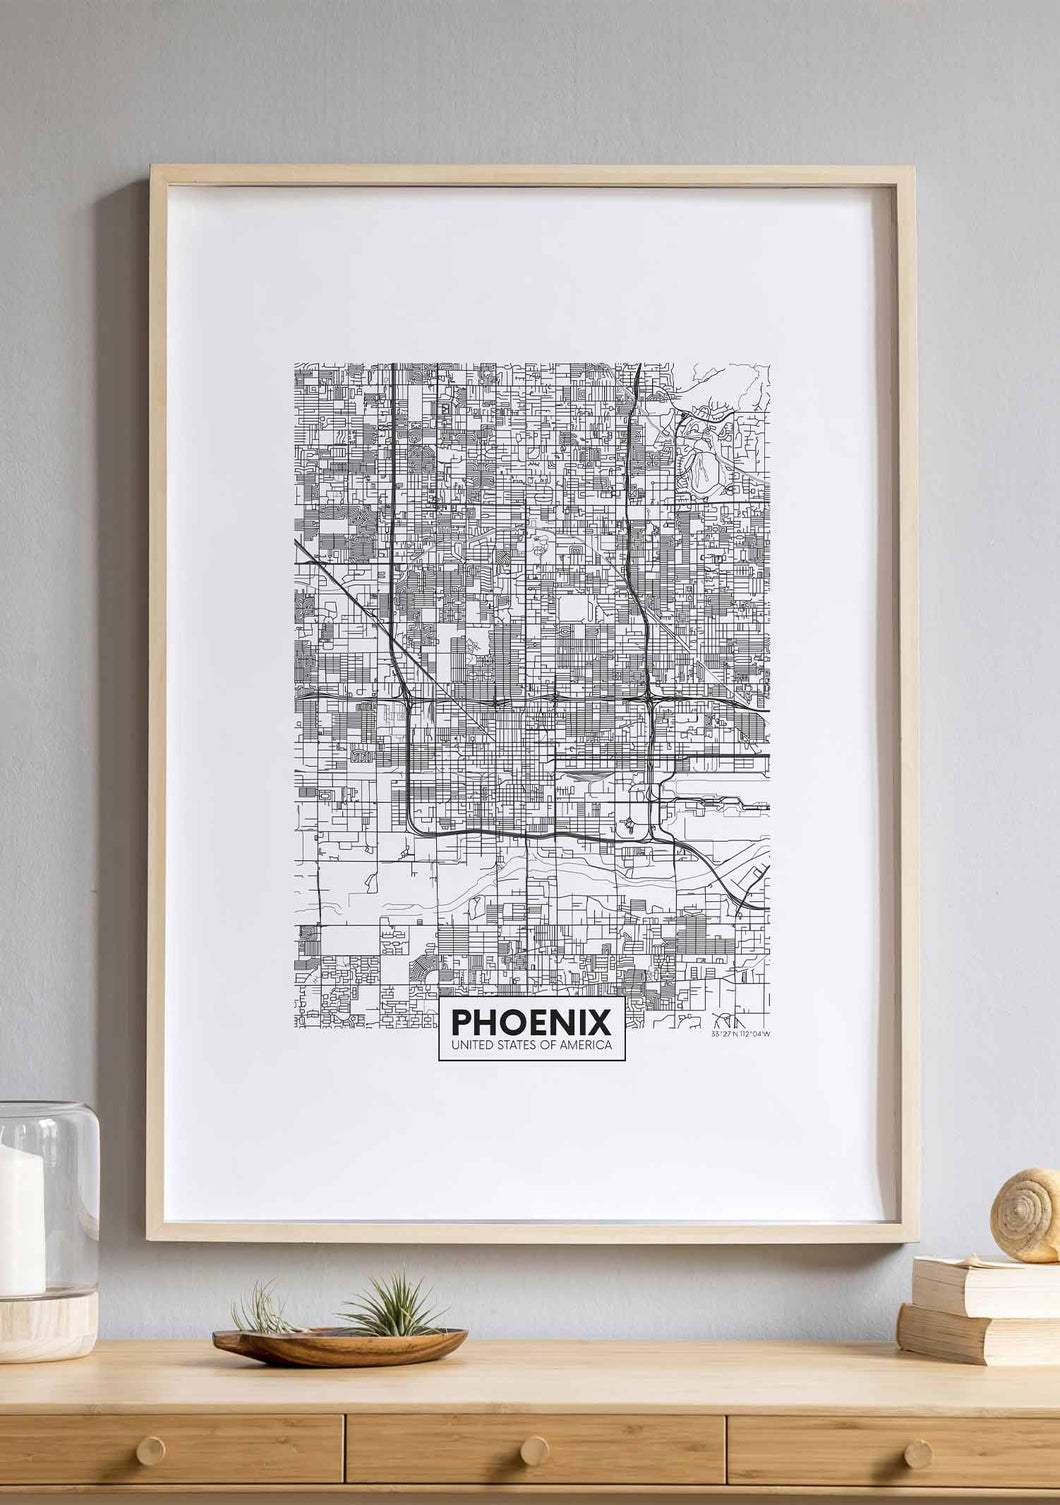 Mapa de Phoenix